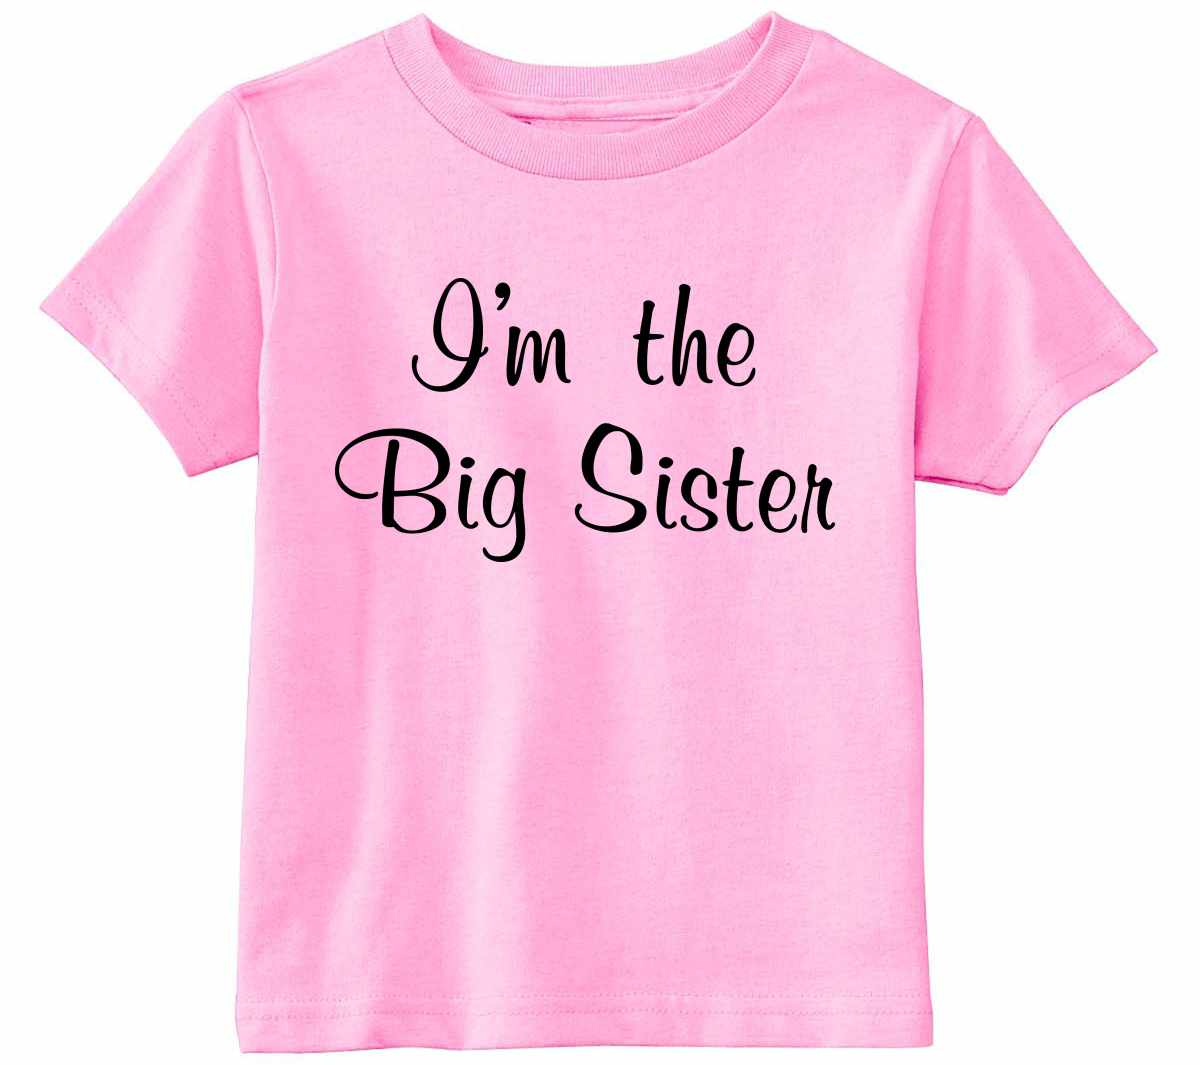 I'm the Big Sister on Infant-Toddler T-Shirt